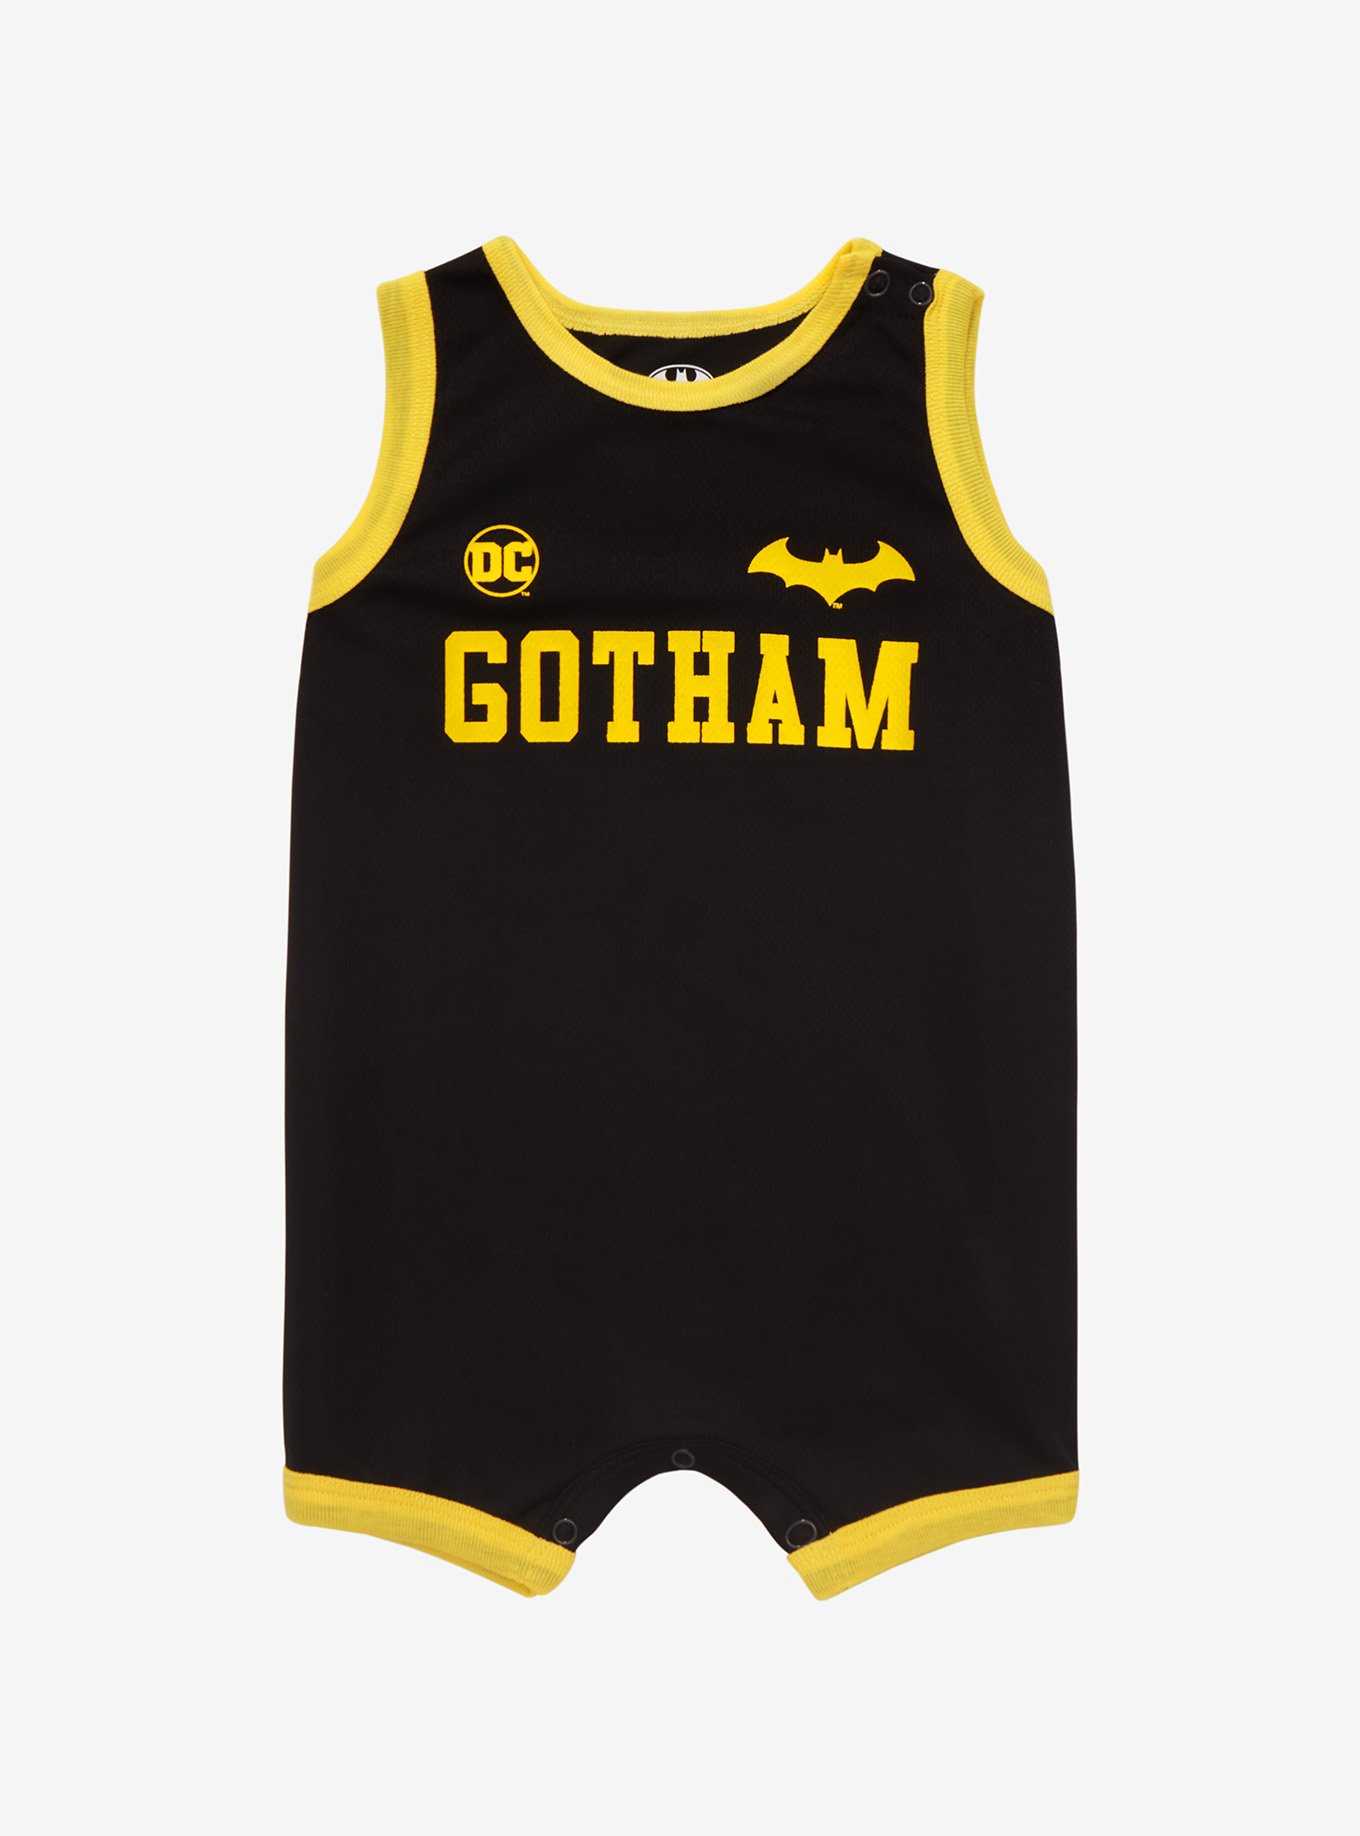 DC Comics Batman Gotham Infant Basketball Jersey Romper - BoxLunch Exclusive, , hi-res